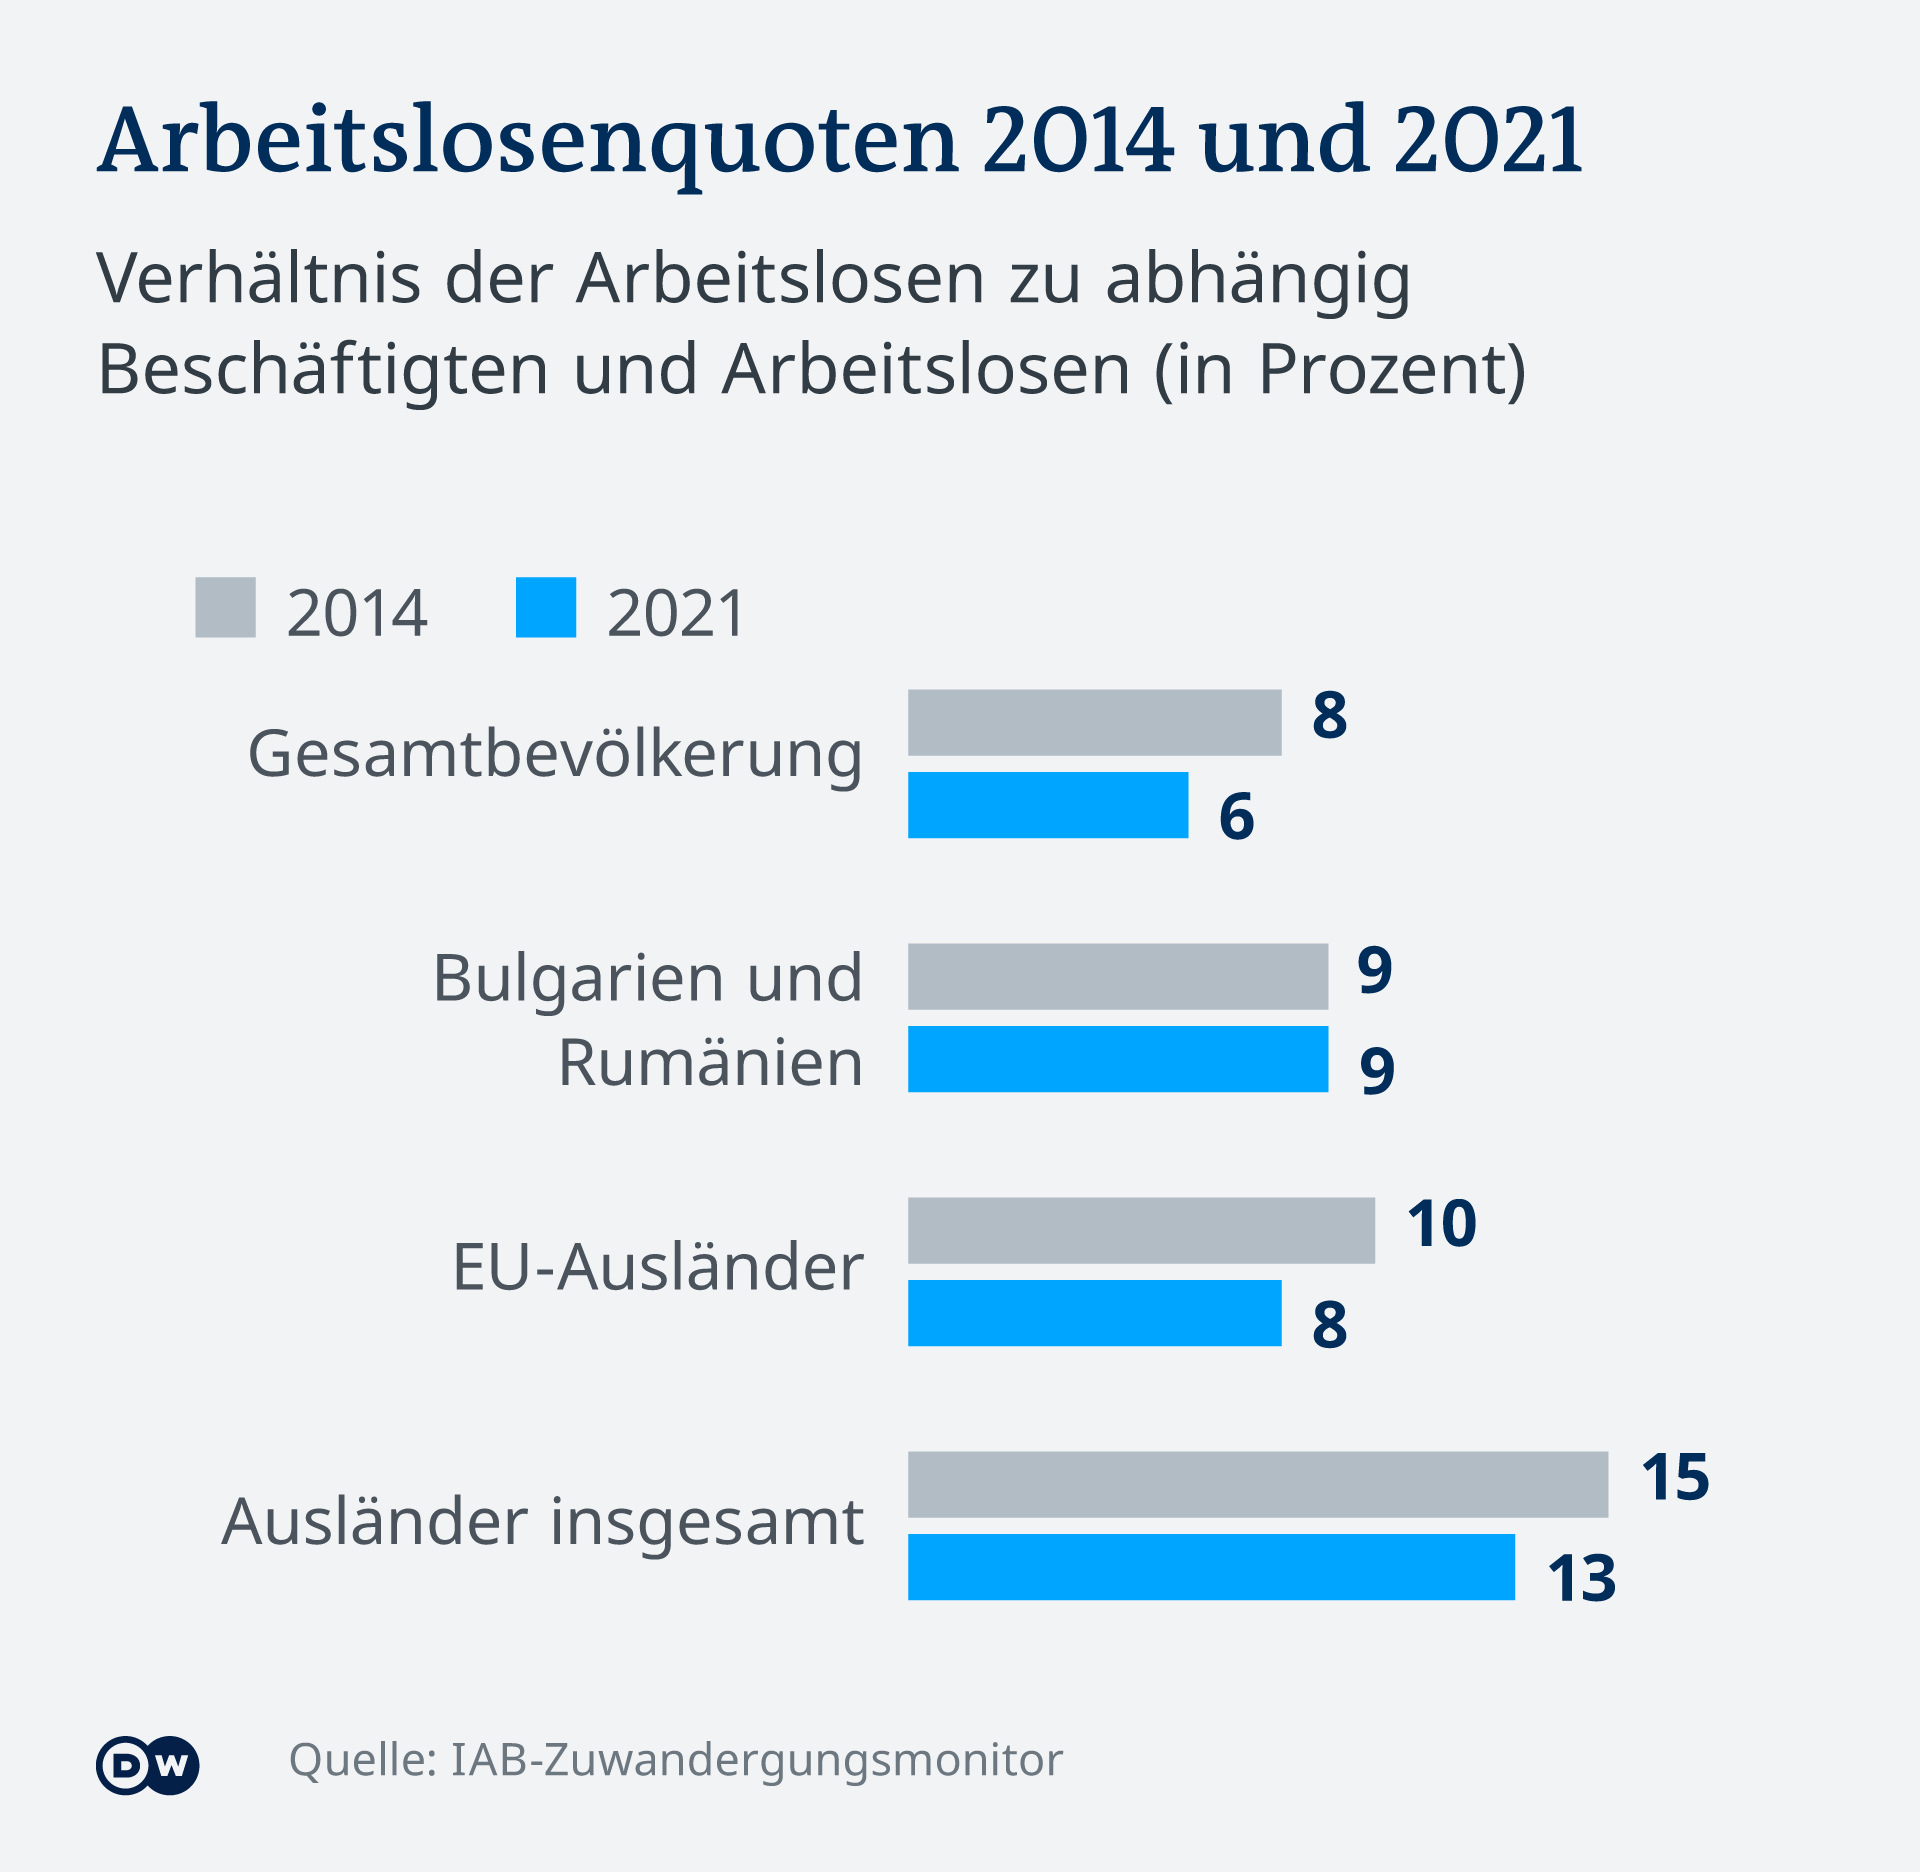 Rata şomajului înregistrată în rândul românilor, bulgarilor şi al altor străini, în perioada 2014 - 2021 în Germania